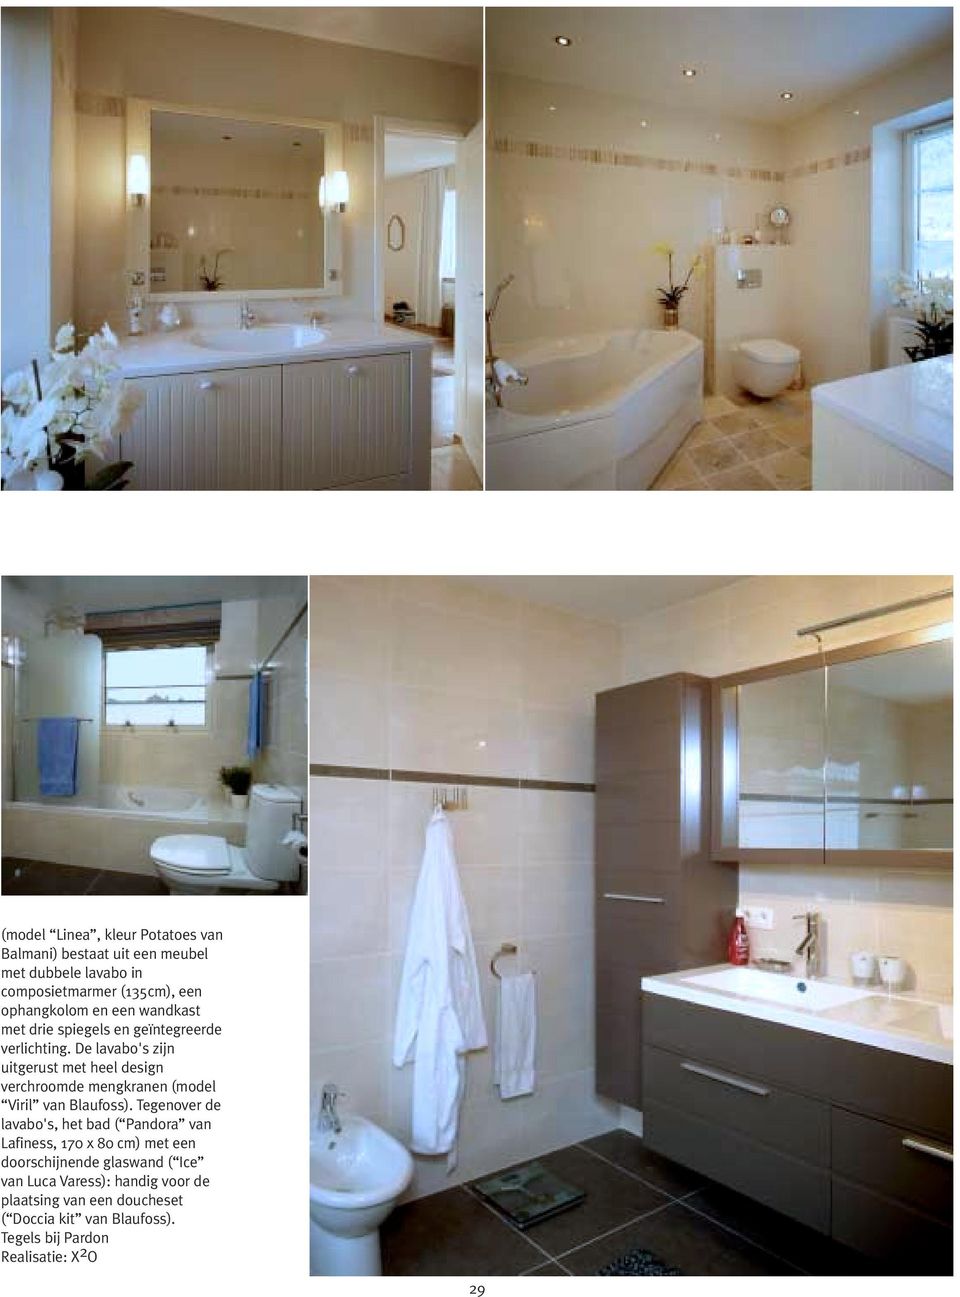 De lavabo's zijn uitgerust met heel design verchroomde mengkranen (model Viril van Blaufoss).